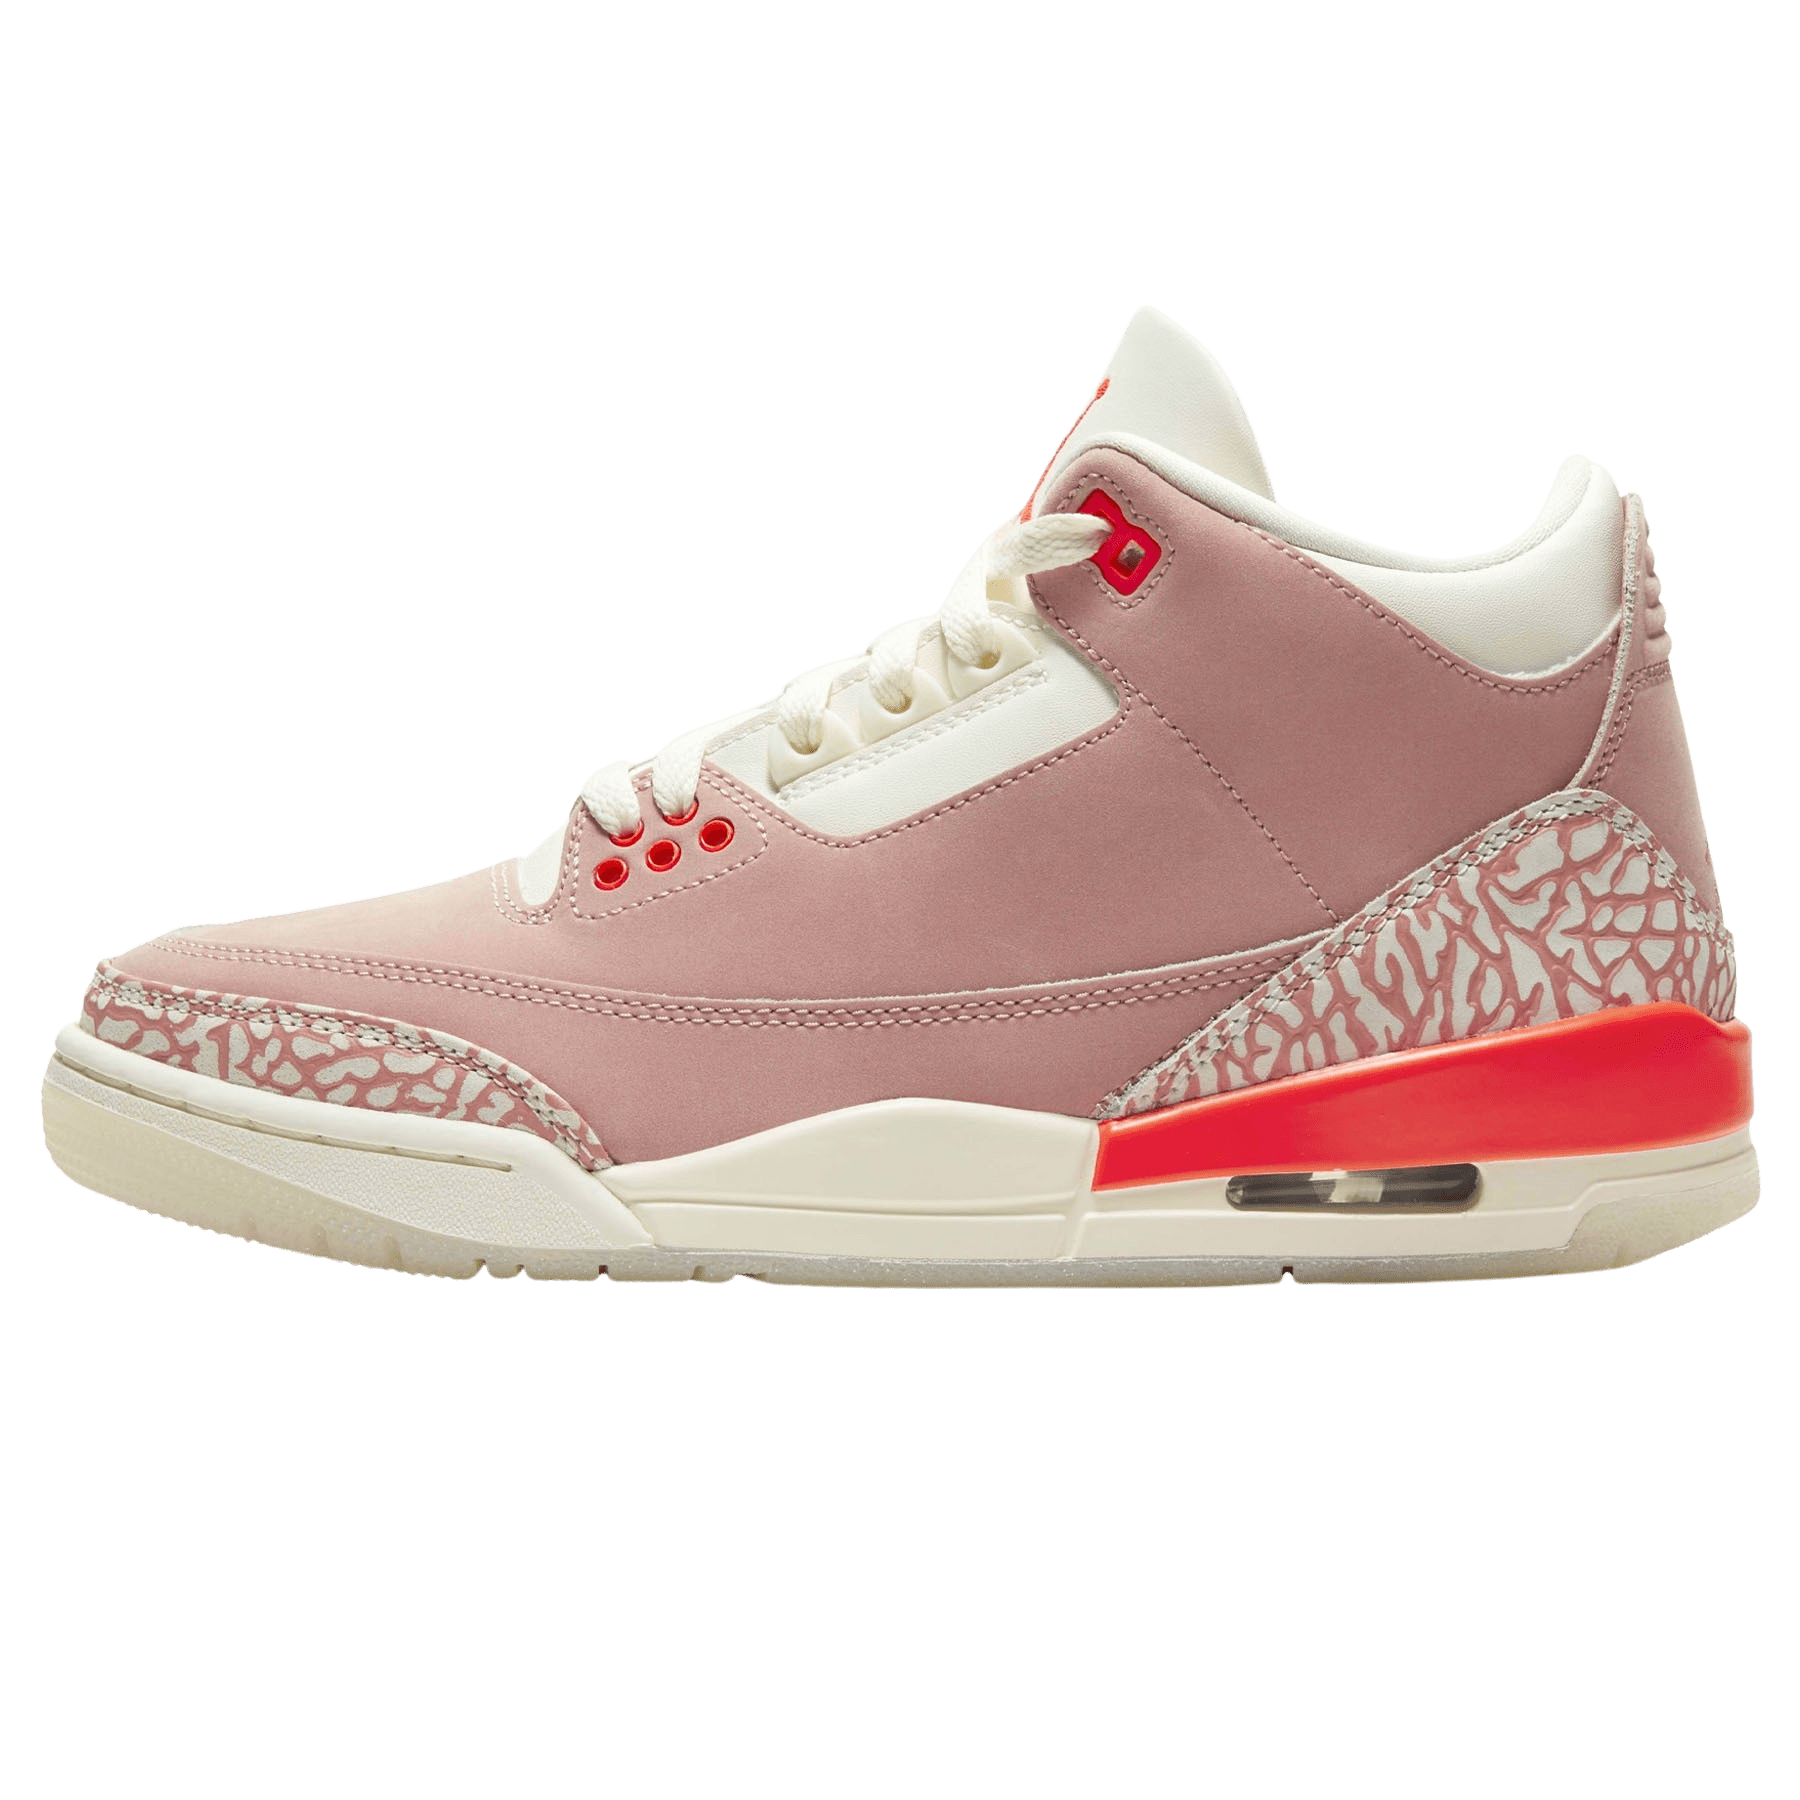 Air Jordan 3 Retro Wmns 'Rust Pink 